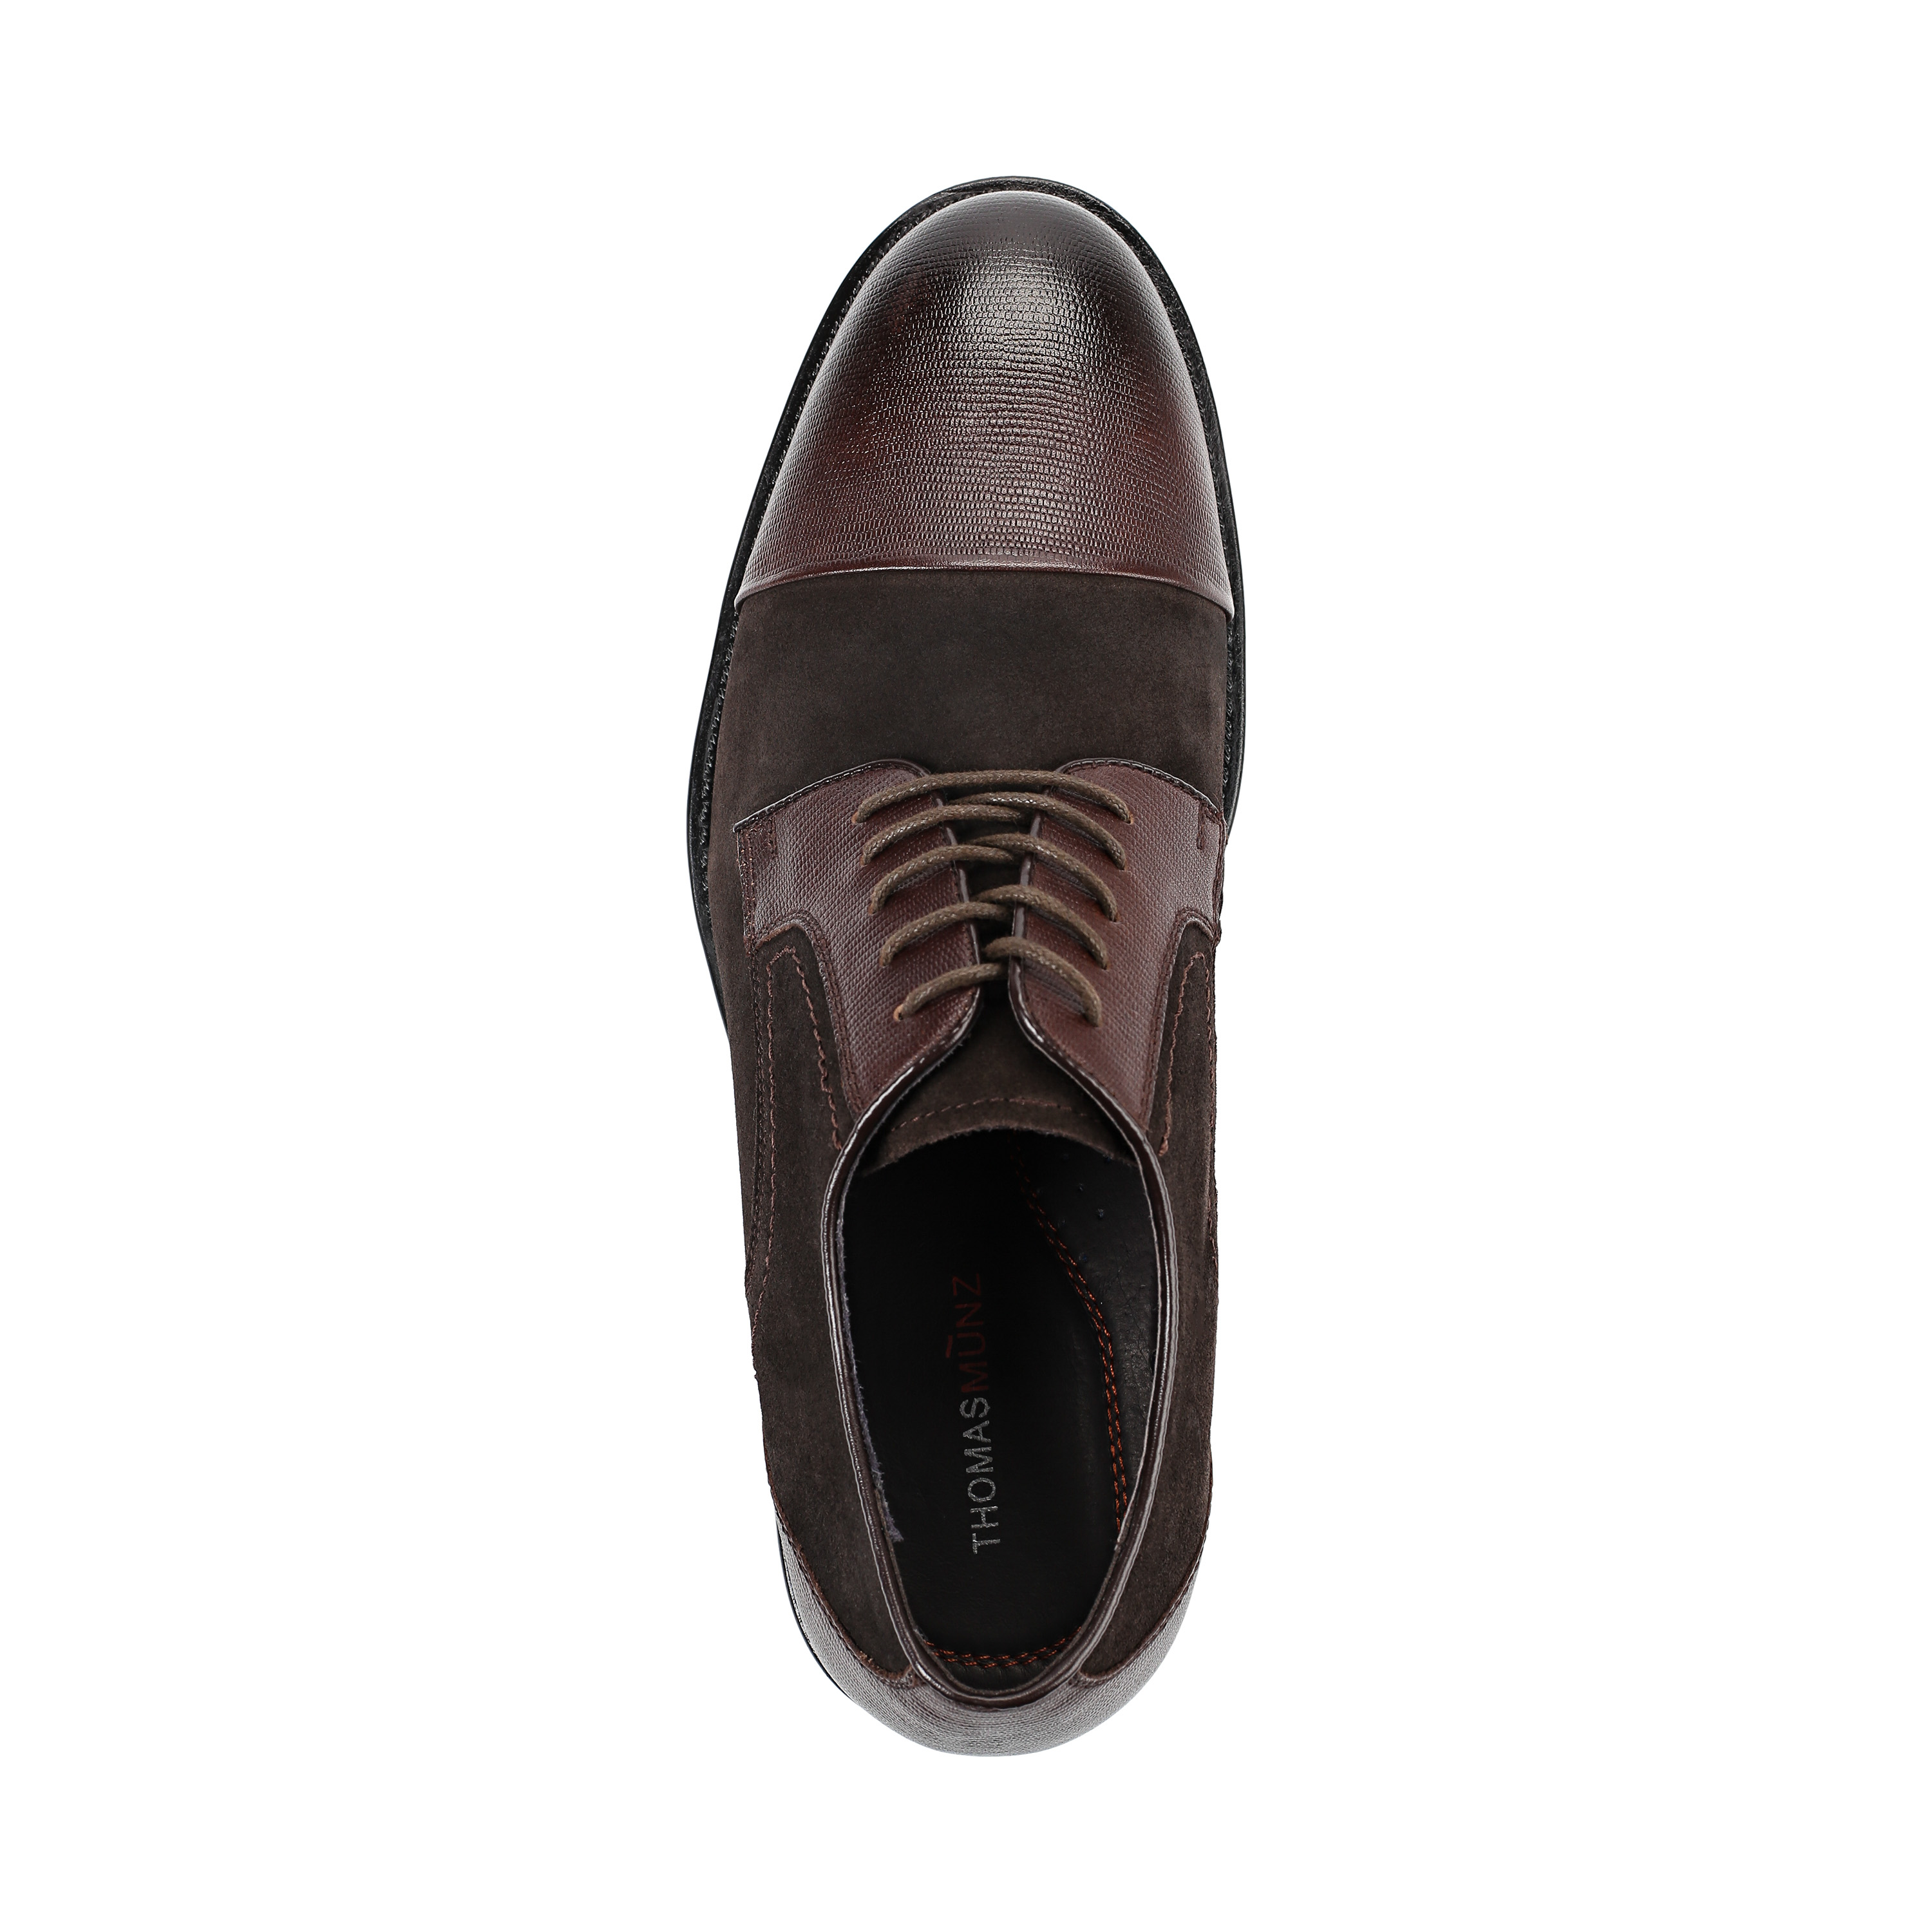 Туфли Thomas Munz 73-134C-1502, цвет коричневый, размер 44 дерби - фото 5